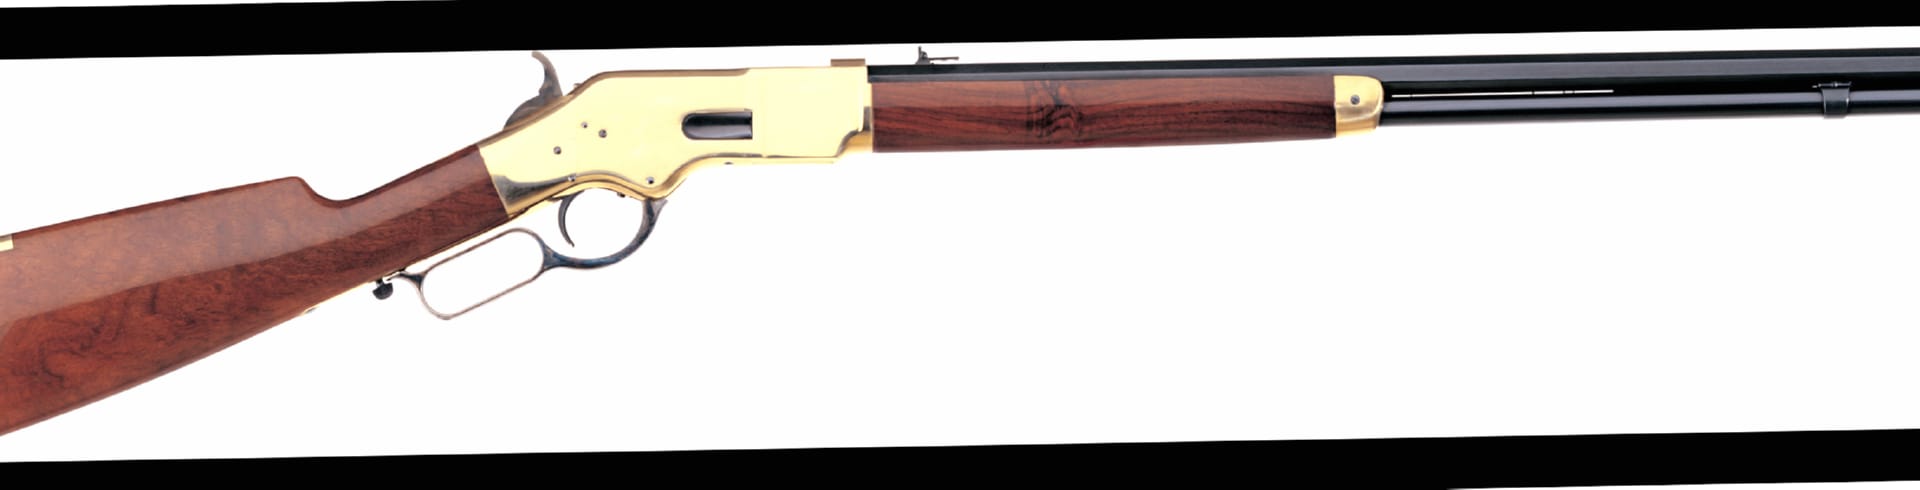 Uberti 1866 Yellowboy Rifle at 1024 x 1024 iPad size wallpapers HD quality